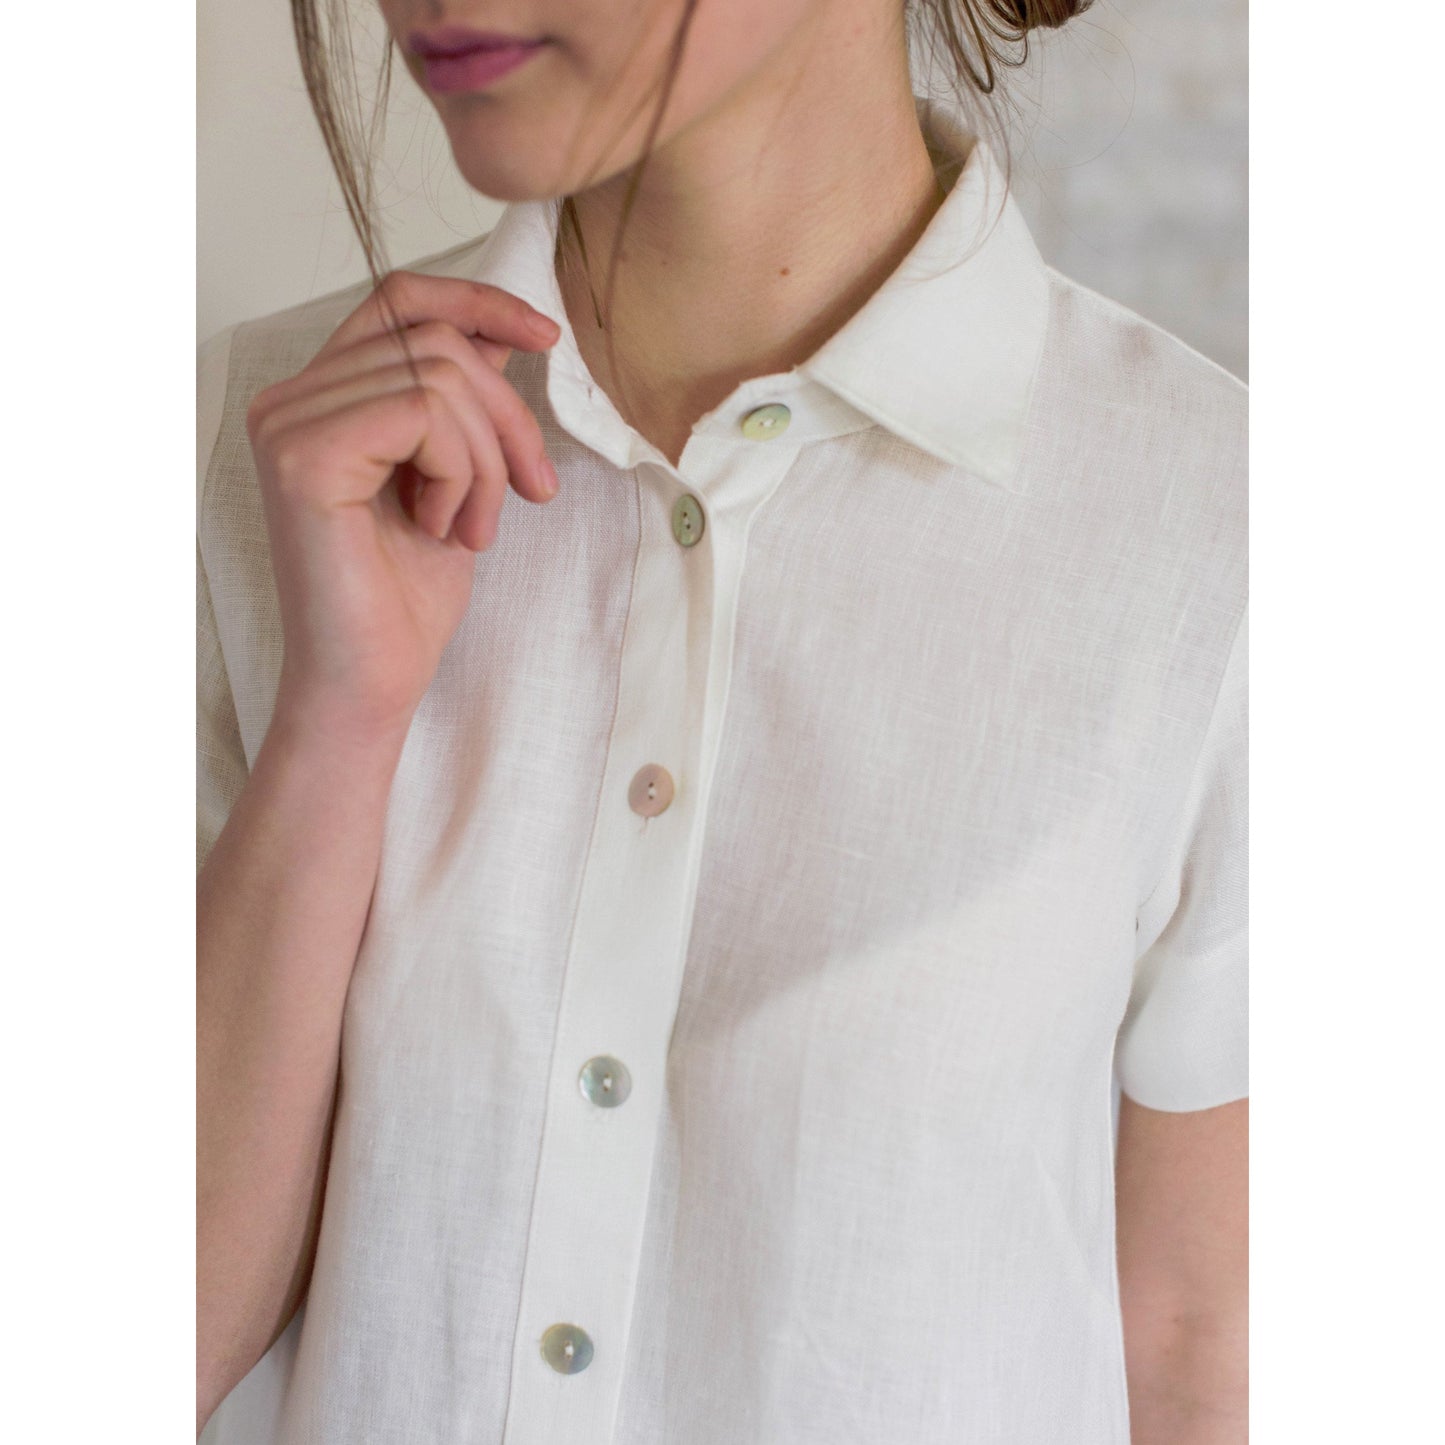 darina short sleeved shirt dress s/p / white